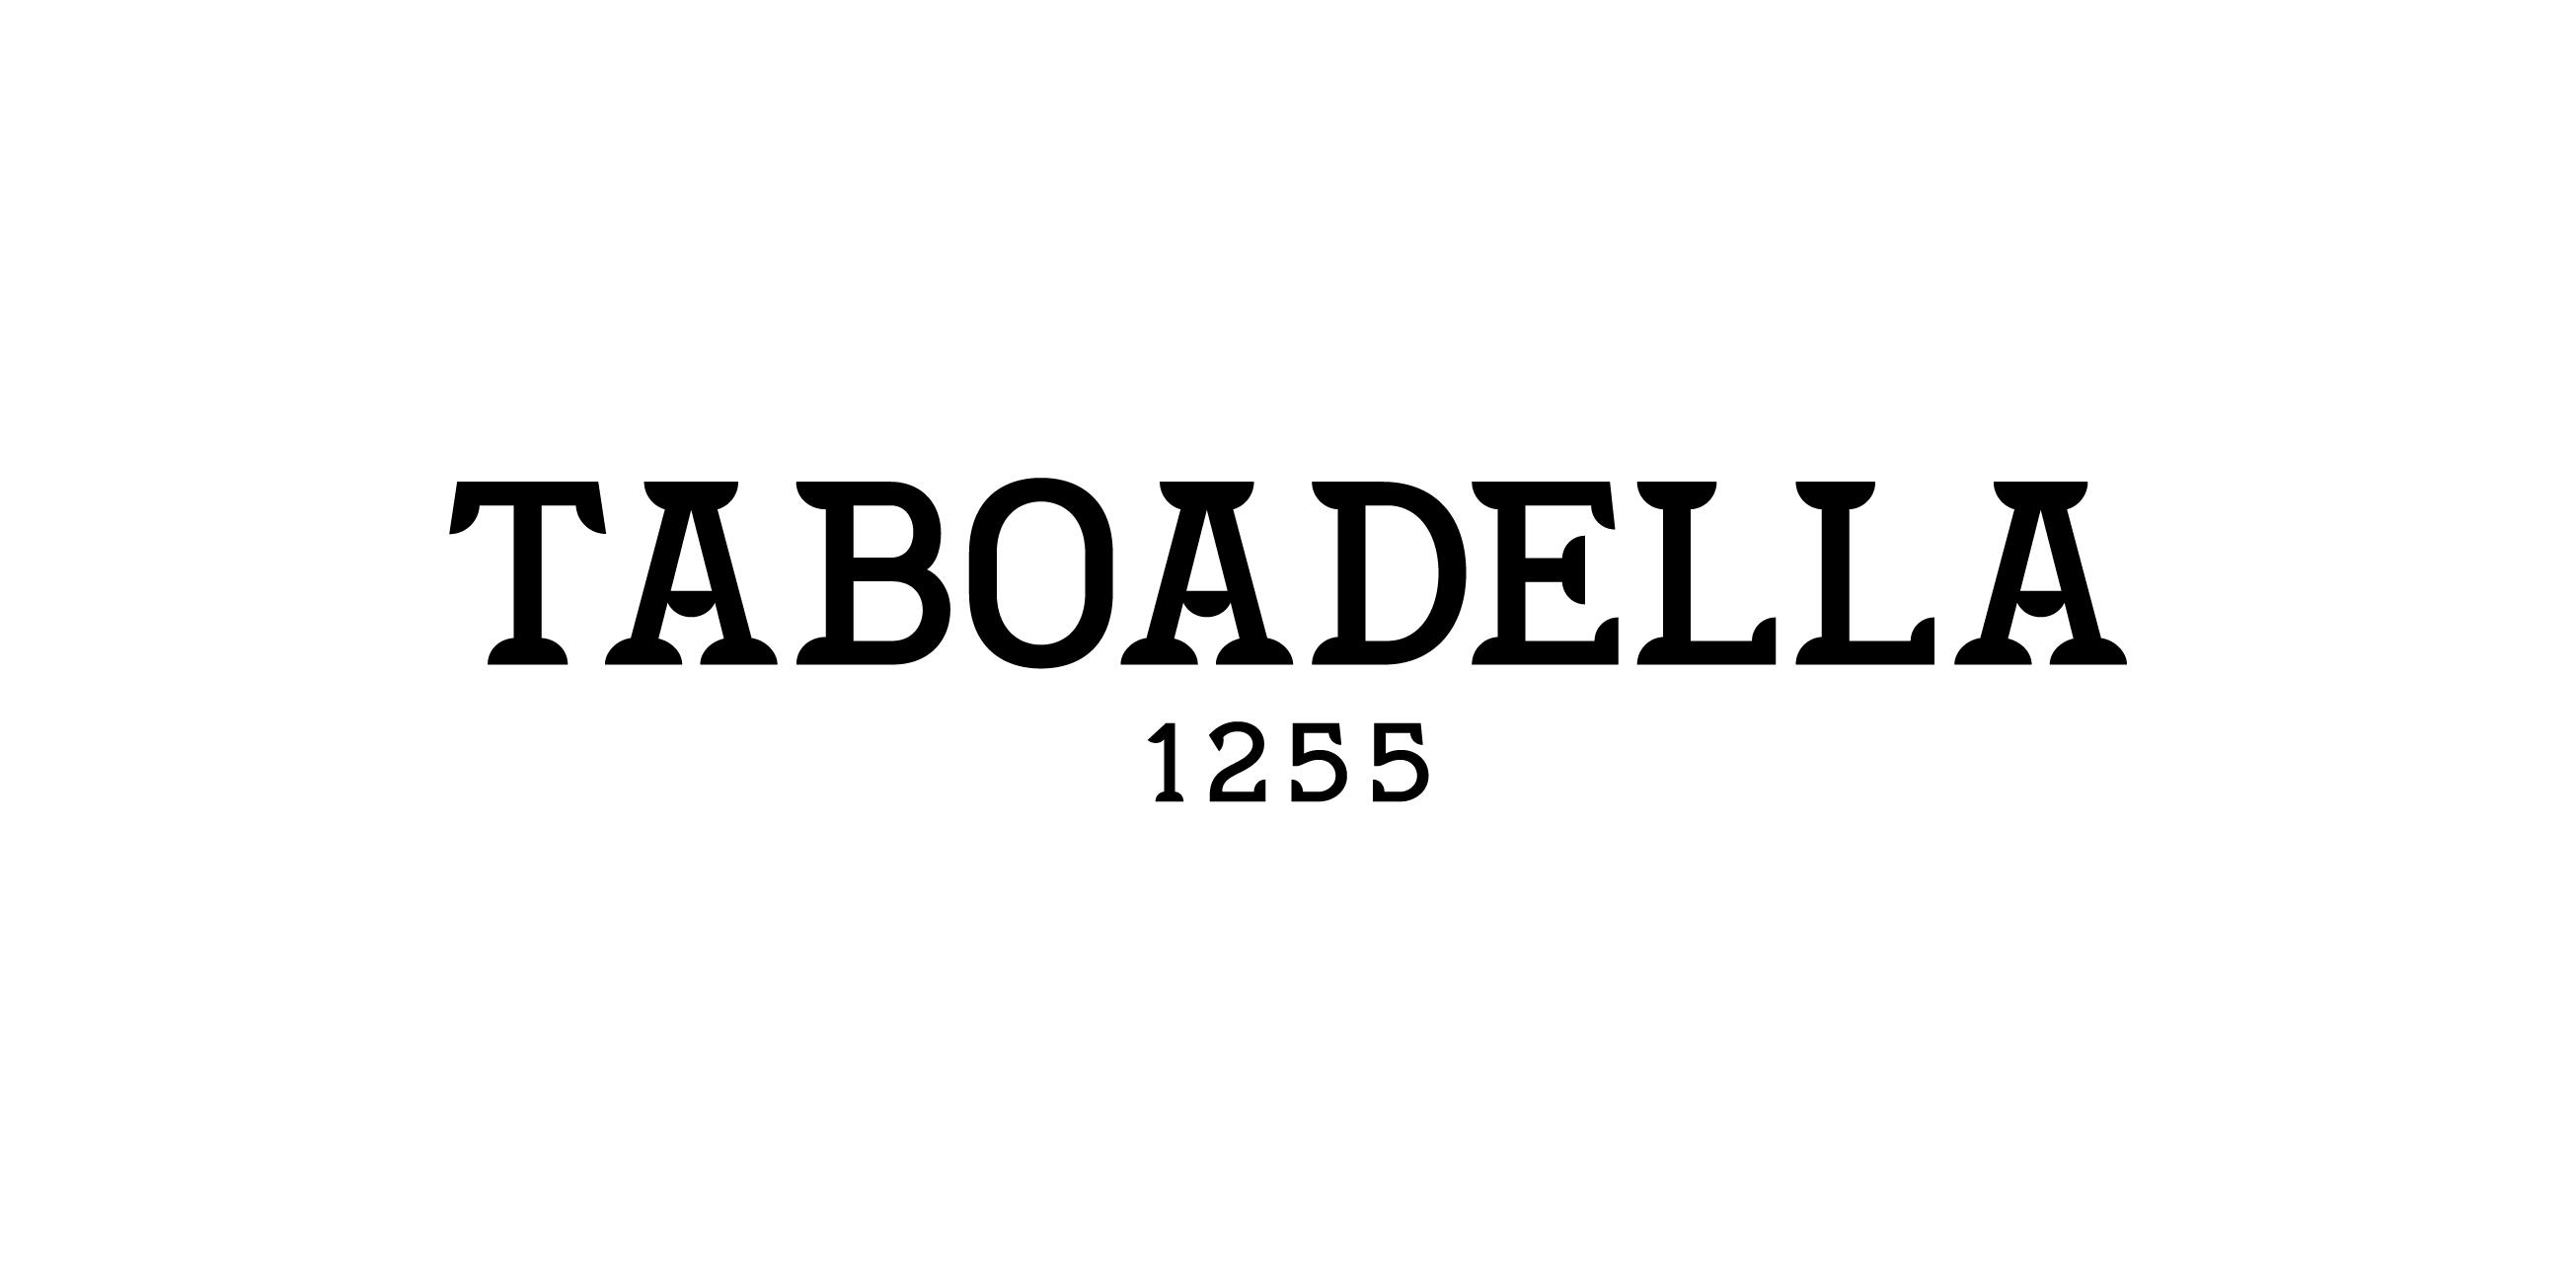 Taboadella 